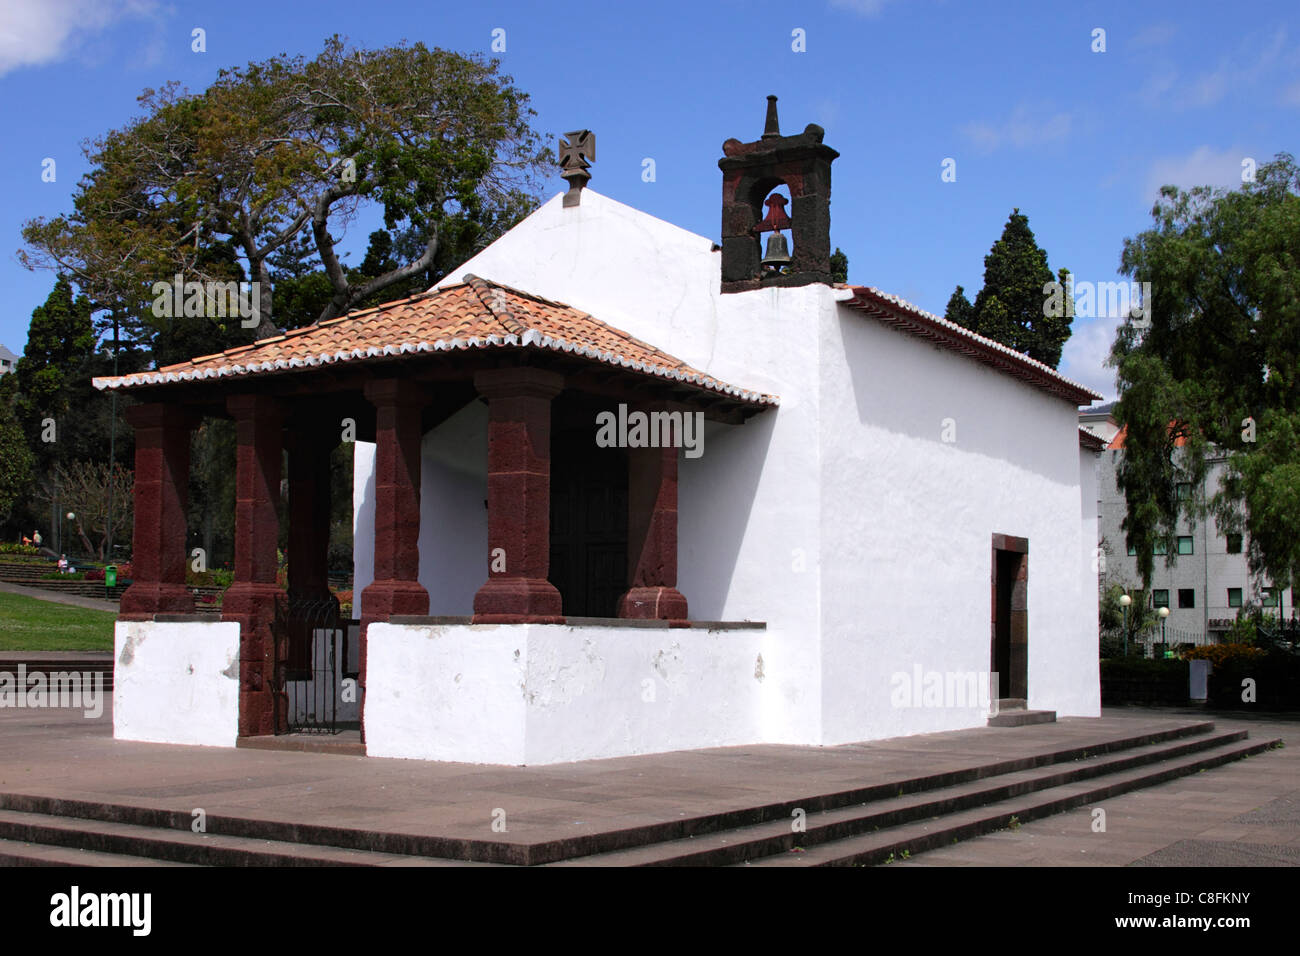 Capela de Santa Catarina Funchal Madeira Stock Photo